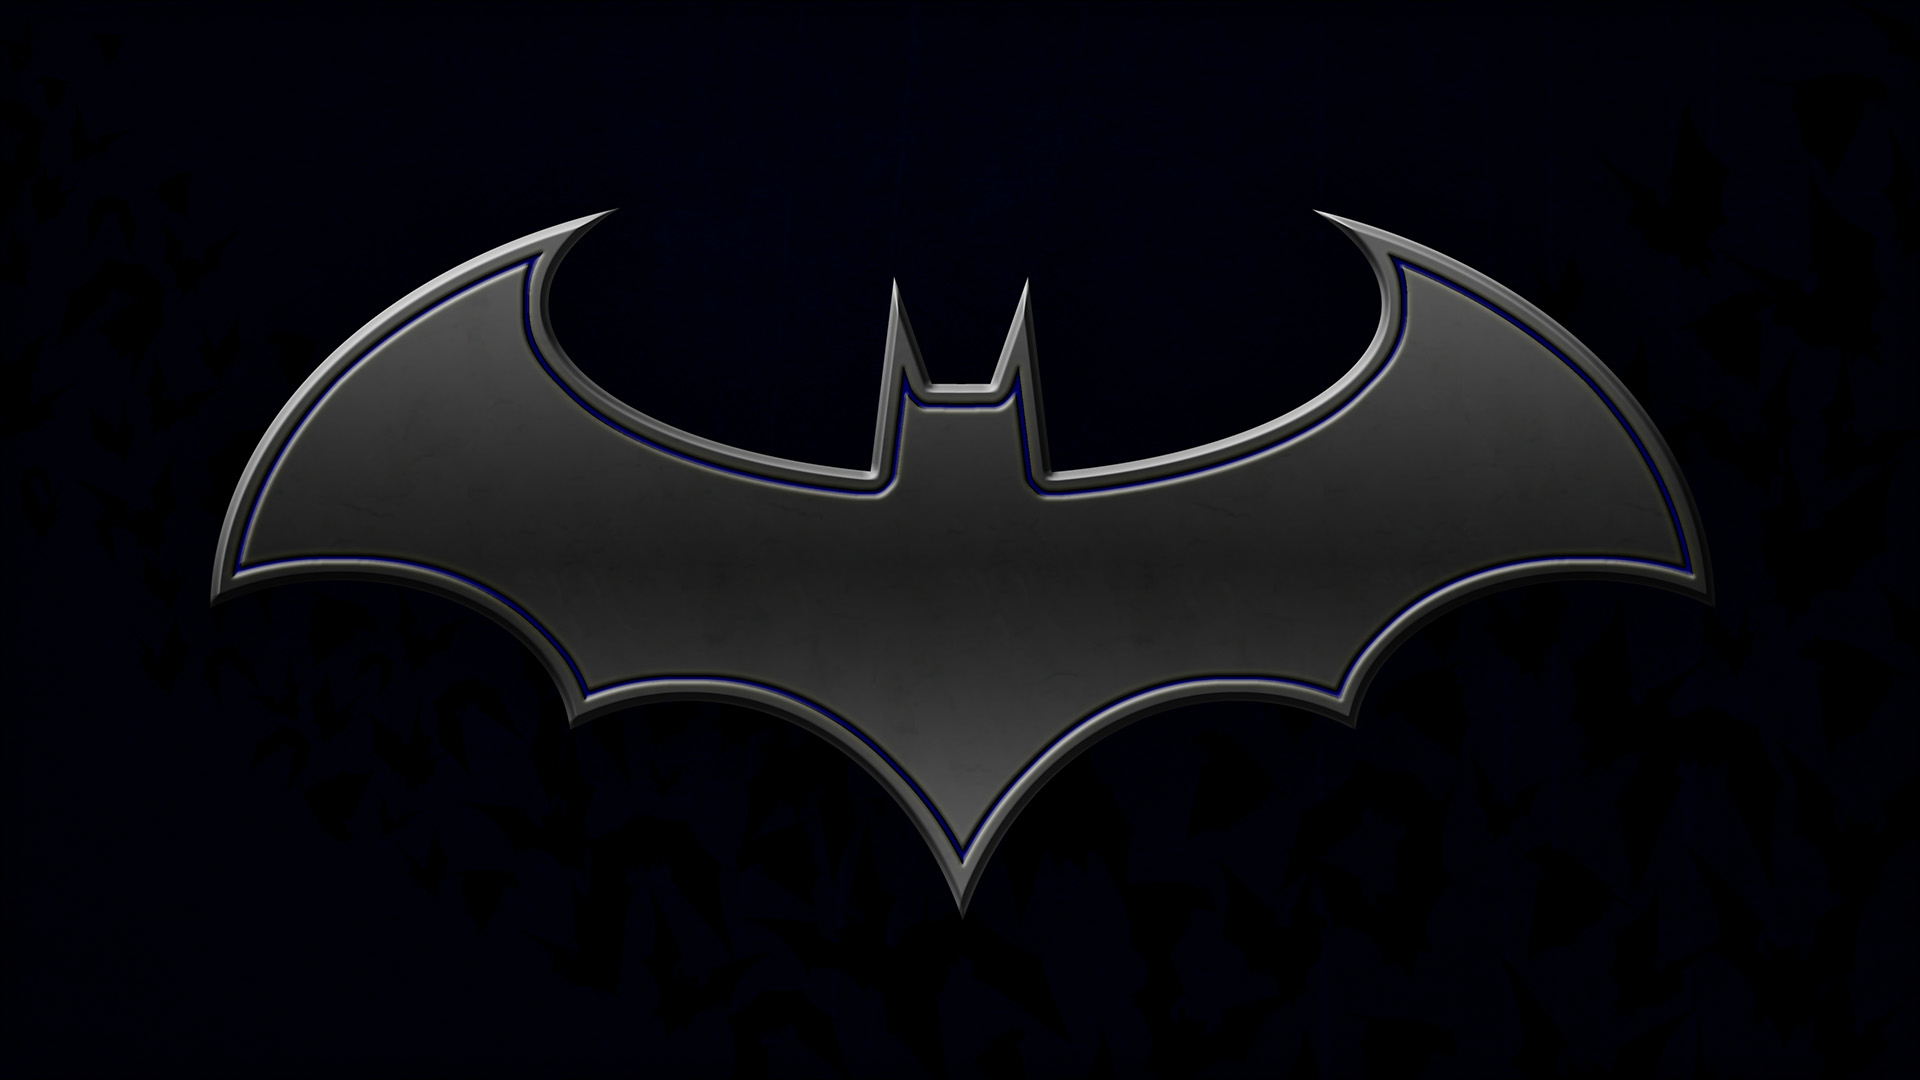 batman logo hd wallpaper wallpapers55com   Best Wallpapers for PCs